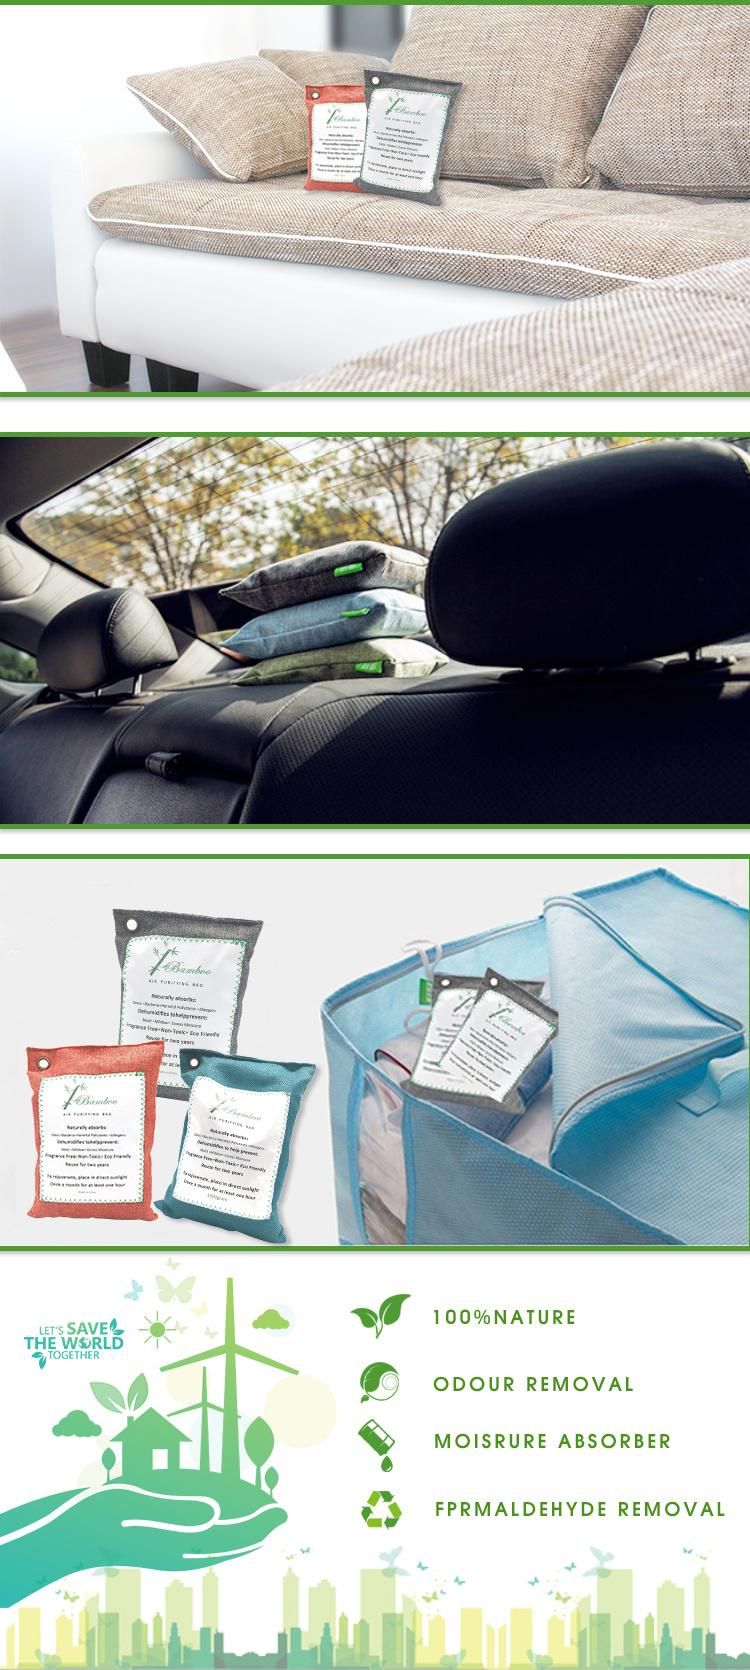 Reusable Air Purifying Bag Natural Bamboo Charcoal Captures Bag Plasic Free